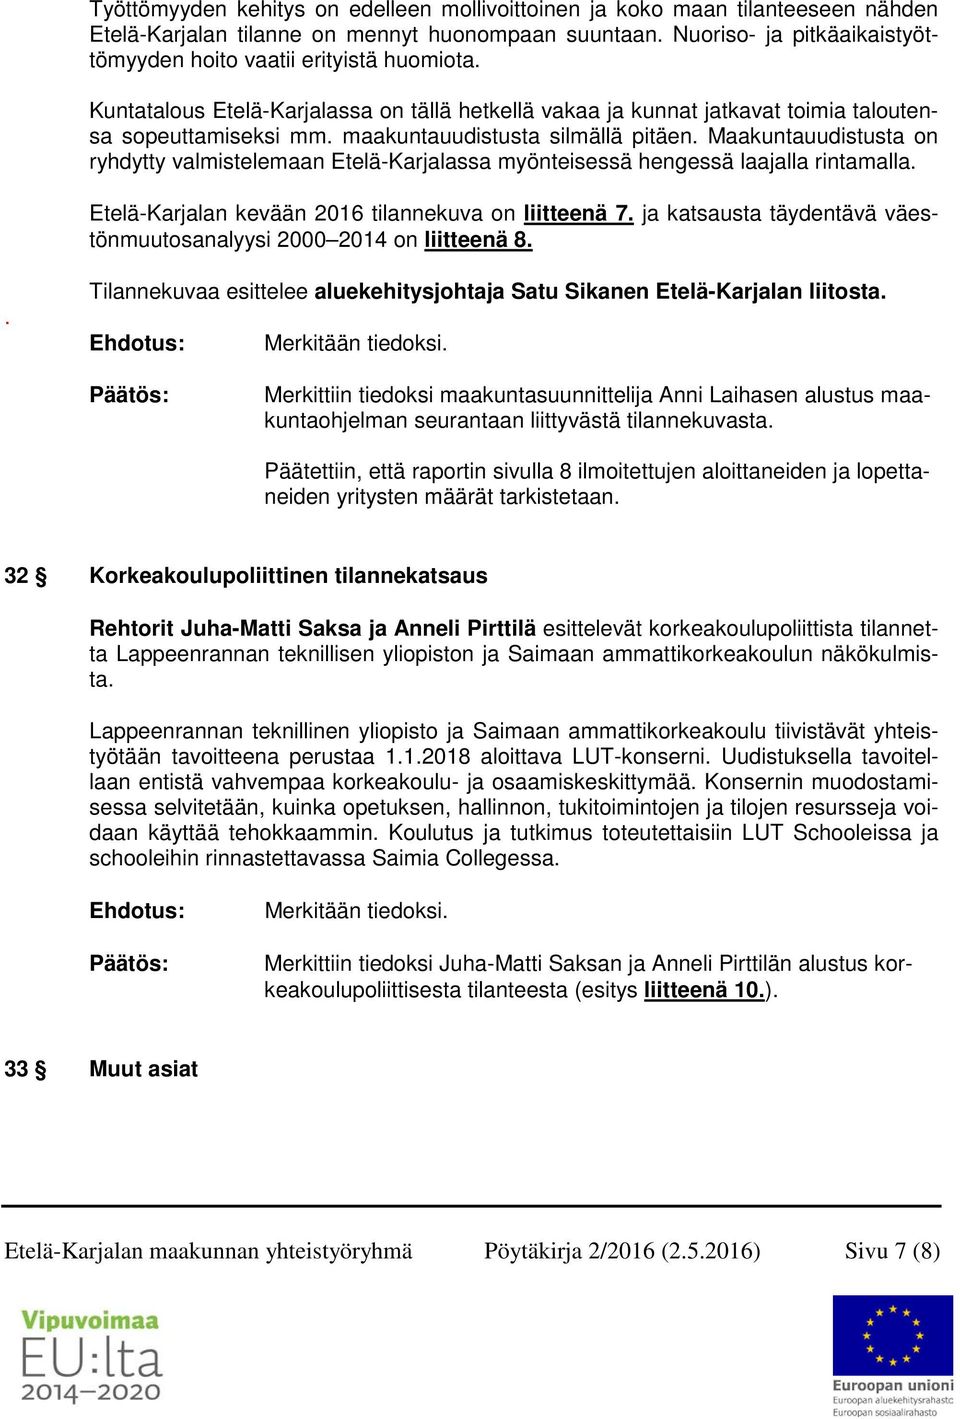 maakuntauudistusta silmällä pitäen. Maakuntauudistusta on ryhdytty valmistelemaan Etelä-Karjalassa myönteisessä hengessä laajalla rintamalla. Etelä-Karjalan kevään 2016 tilannekuva on liitteenä 7.